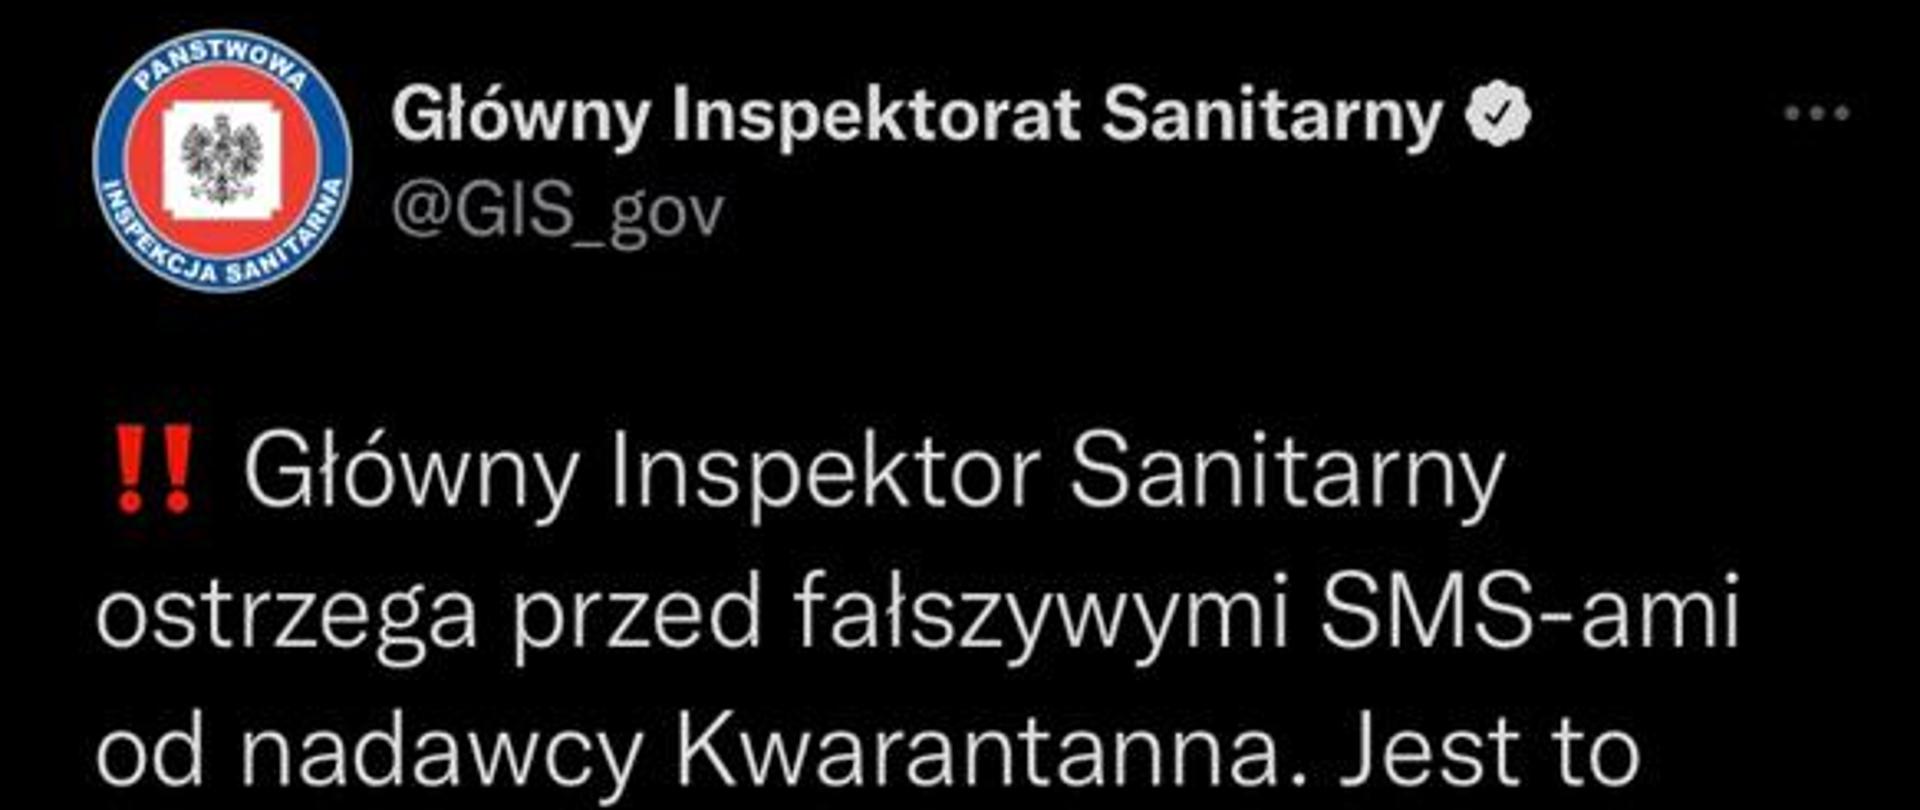 Obraz przedstawia screen z tweet-a Główny Inspektor Sanitarny zawierający ostrzeżenie przed fałszywymi SMS-ami od nadawcy Kwarantanna oraz przykładowy wygląd wiadomości z linkiem. 